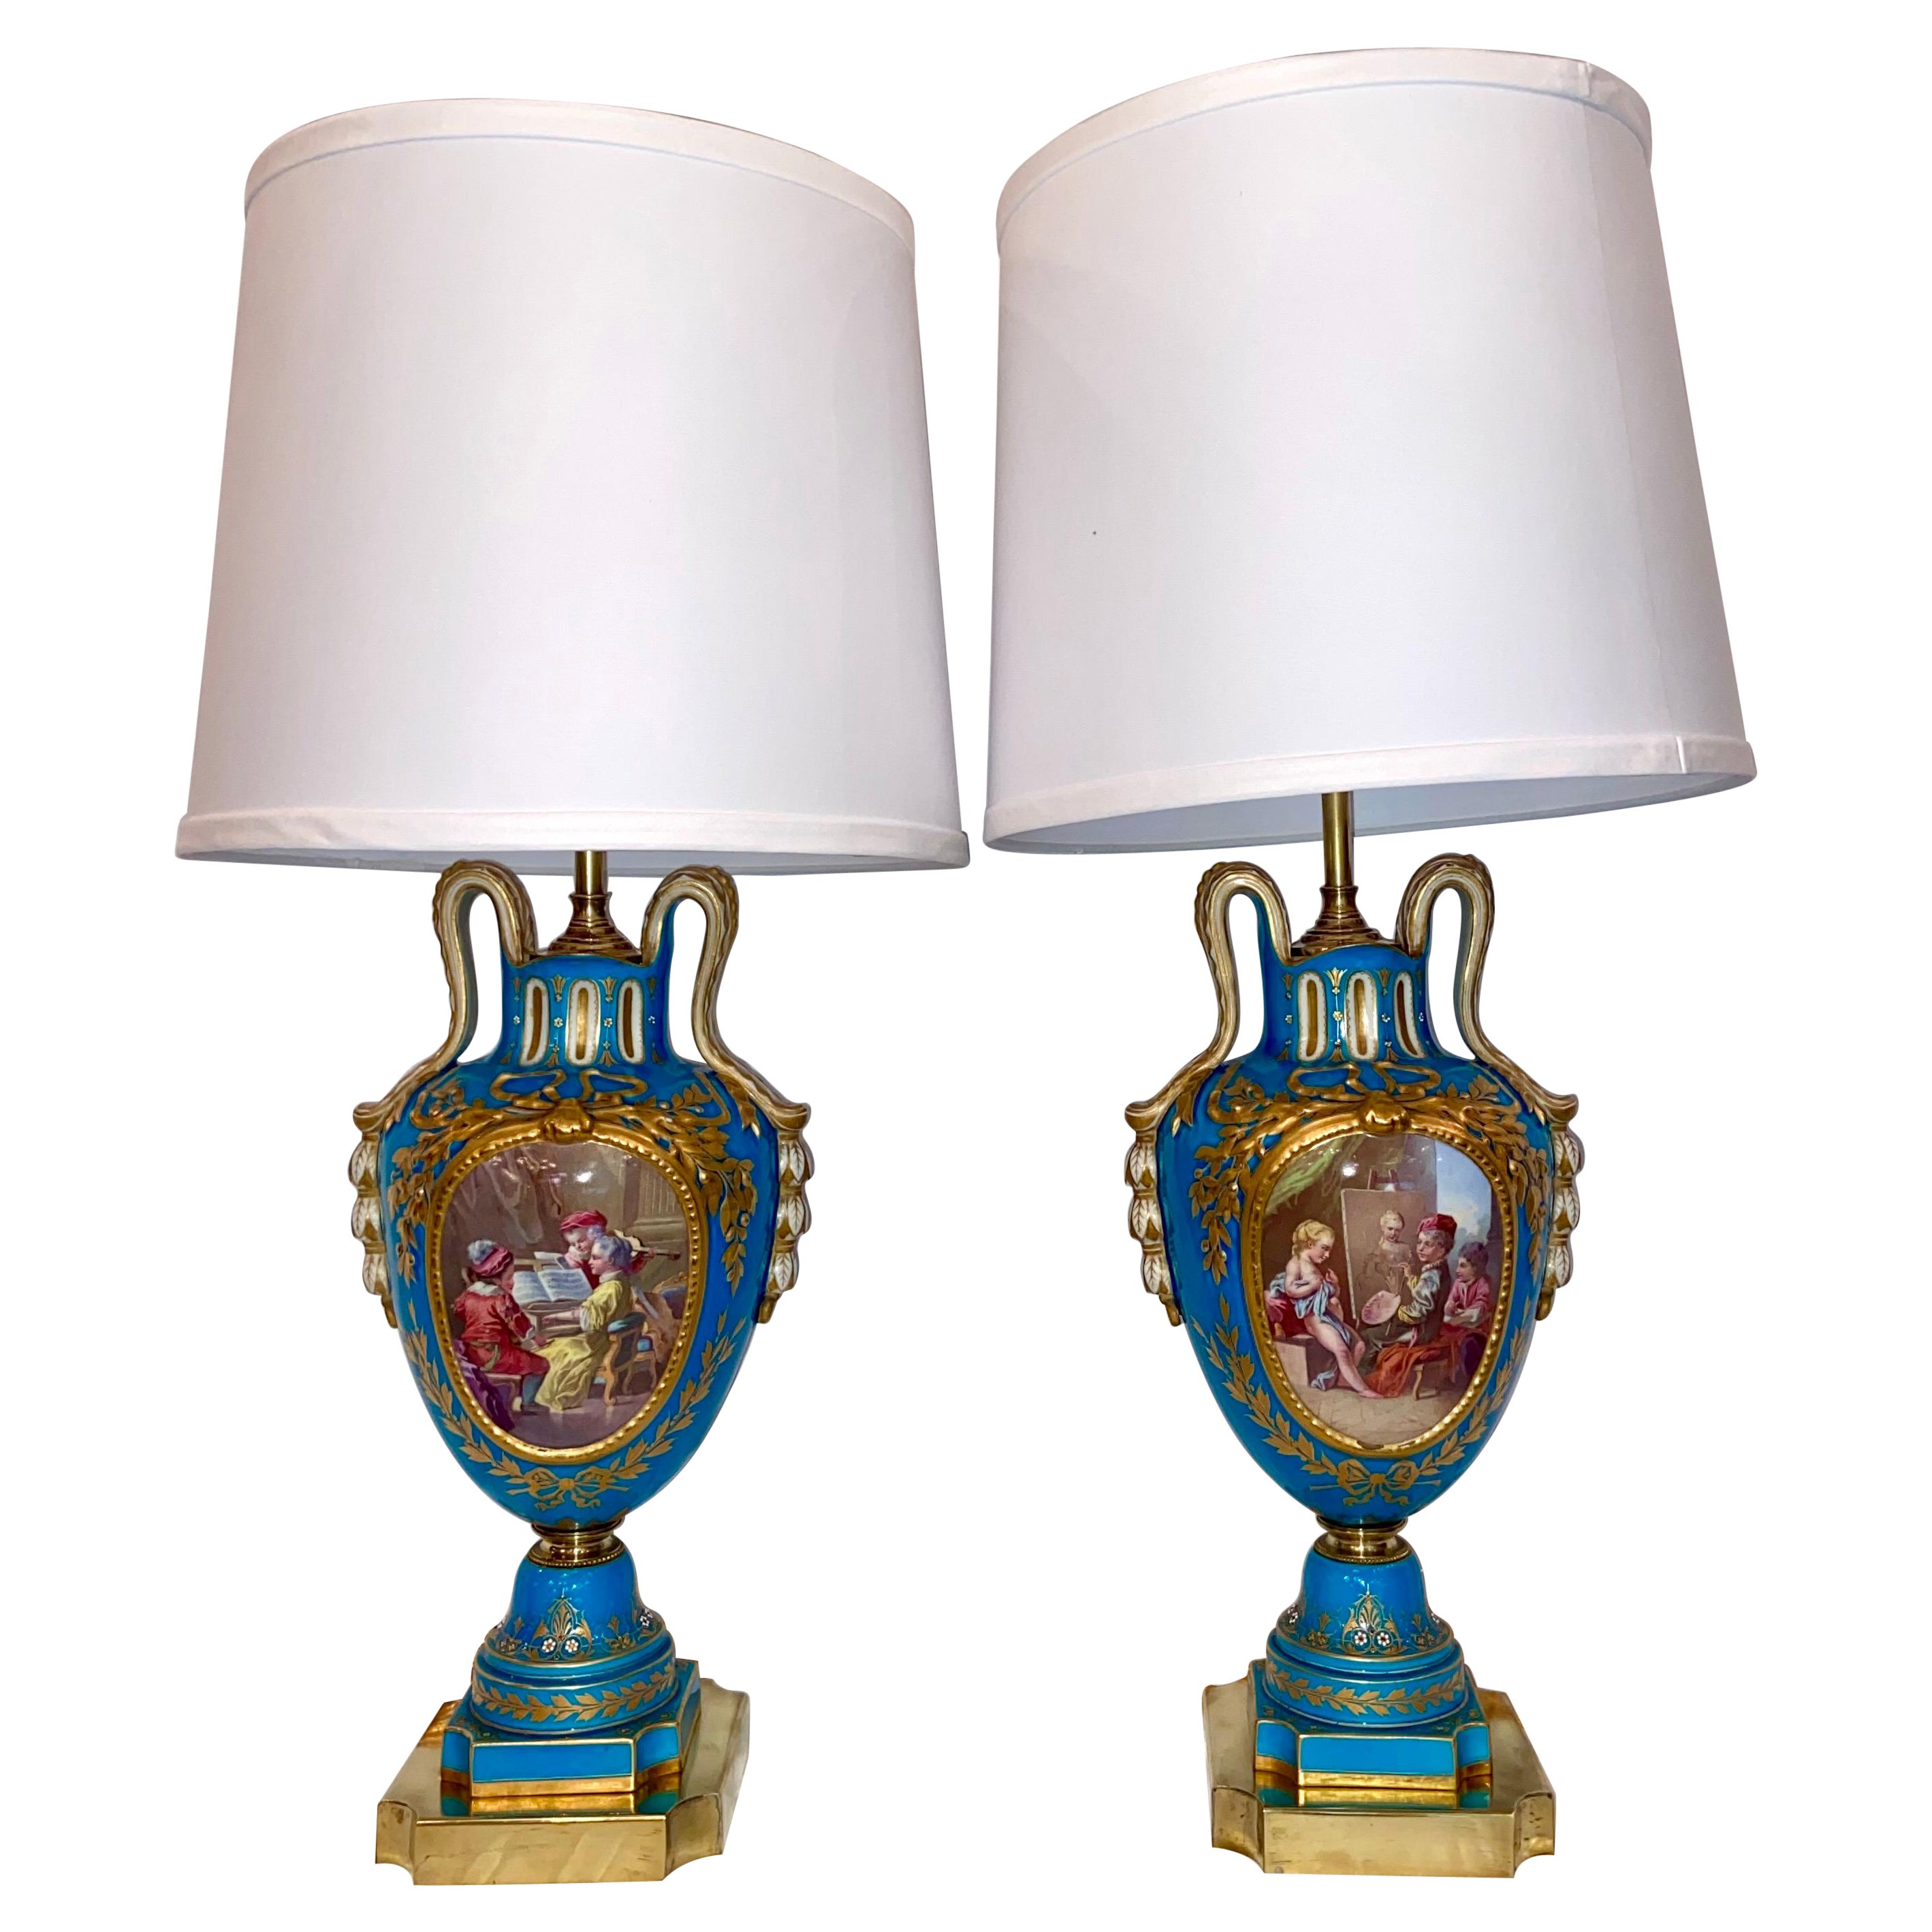 Paire de lampes françaises anciennes en porcelaine « Vieux Paris », bleu cyan et or, vers 1880